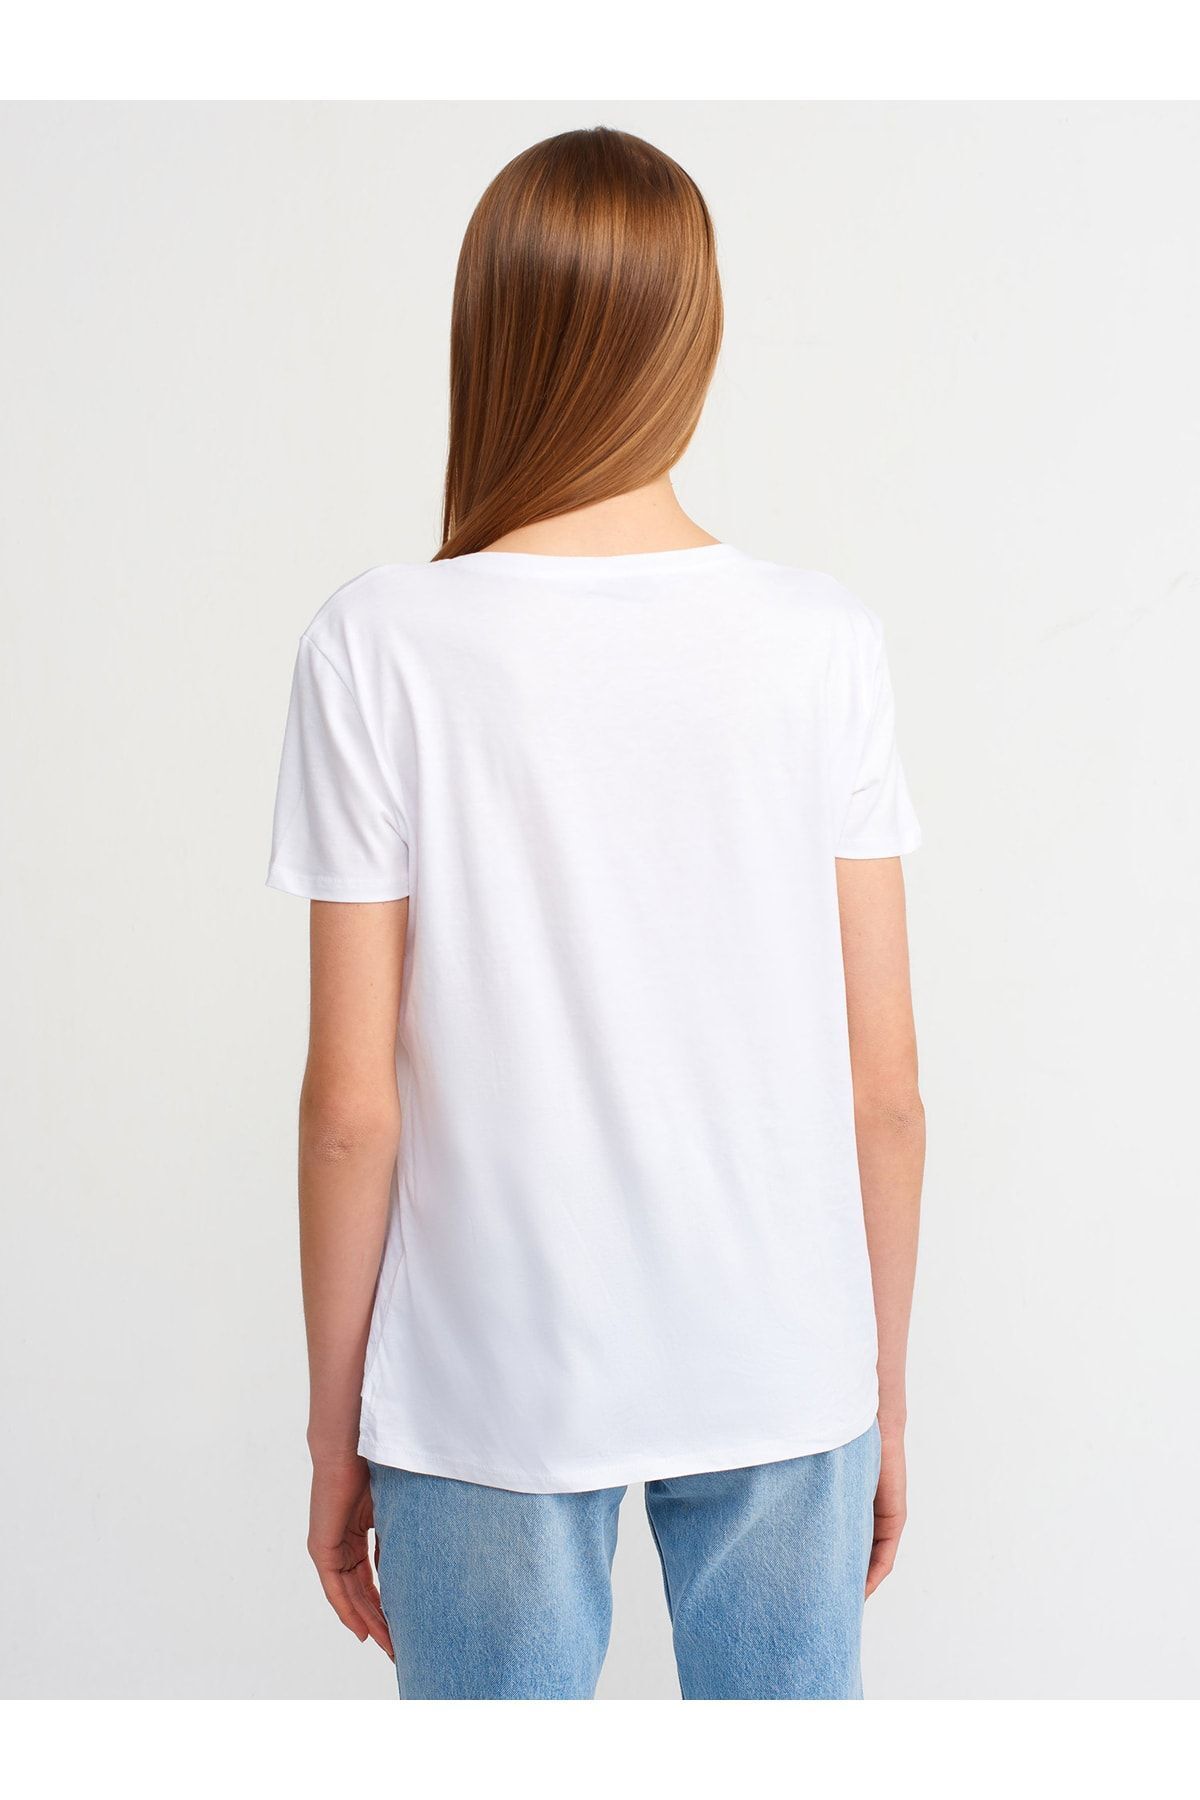 Dilvin 3470 V Yaka Basic T-shirt-beyaz